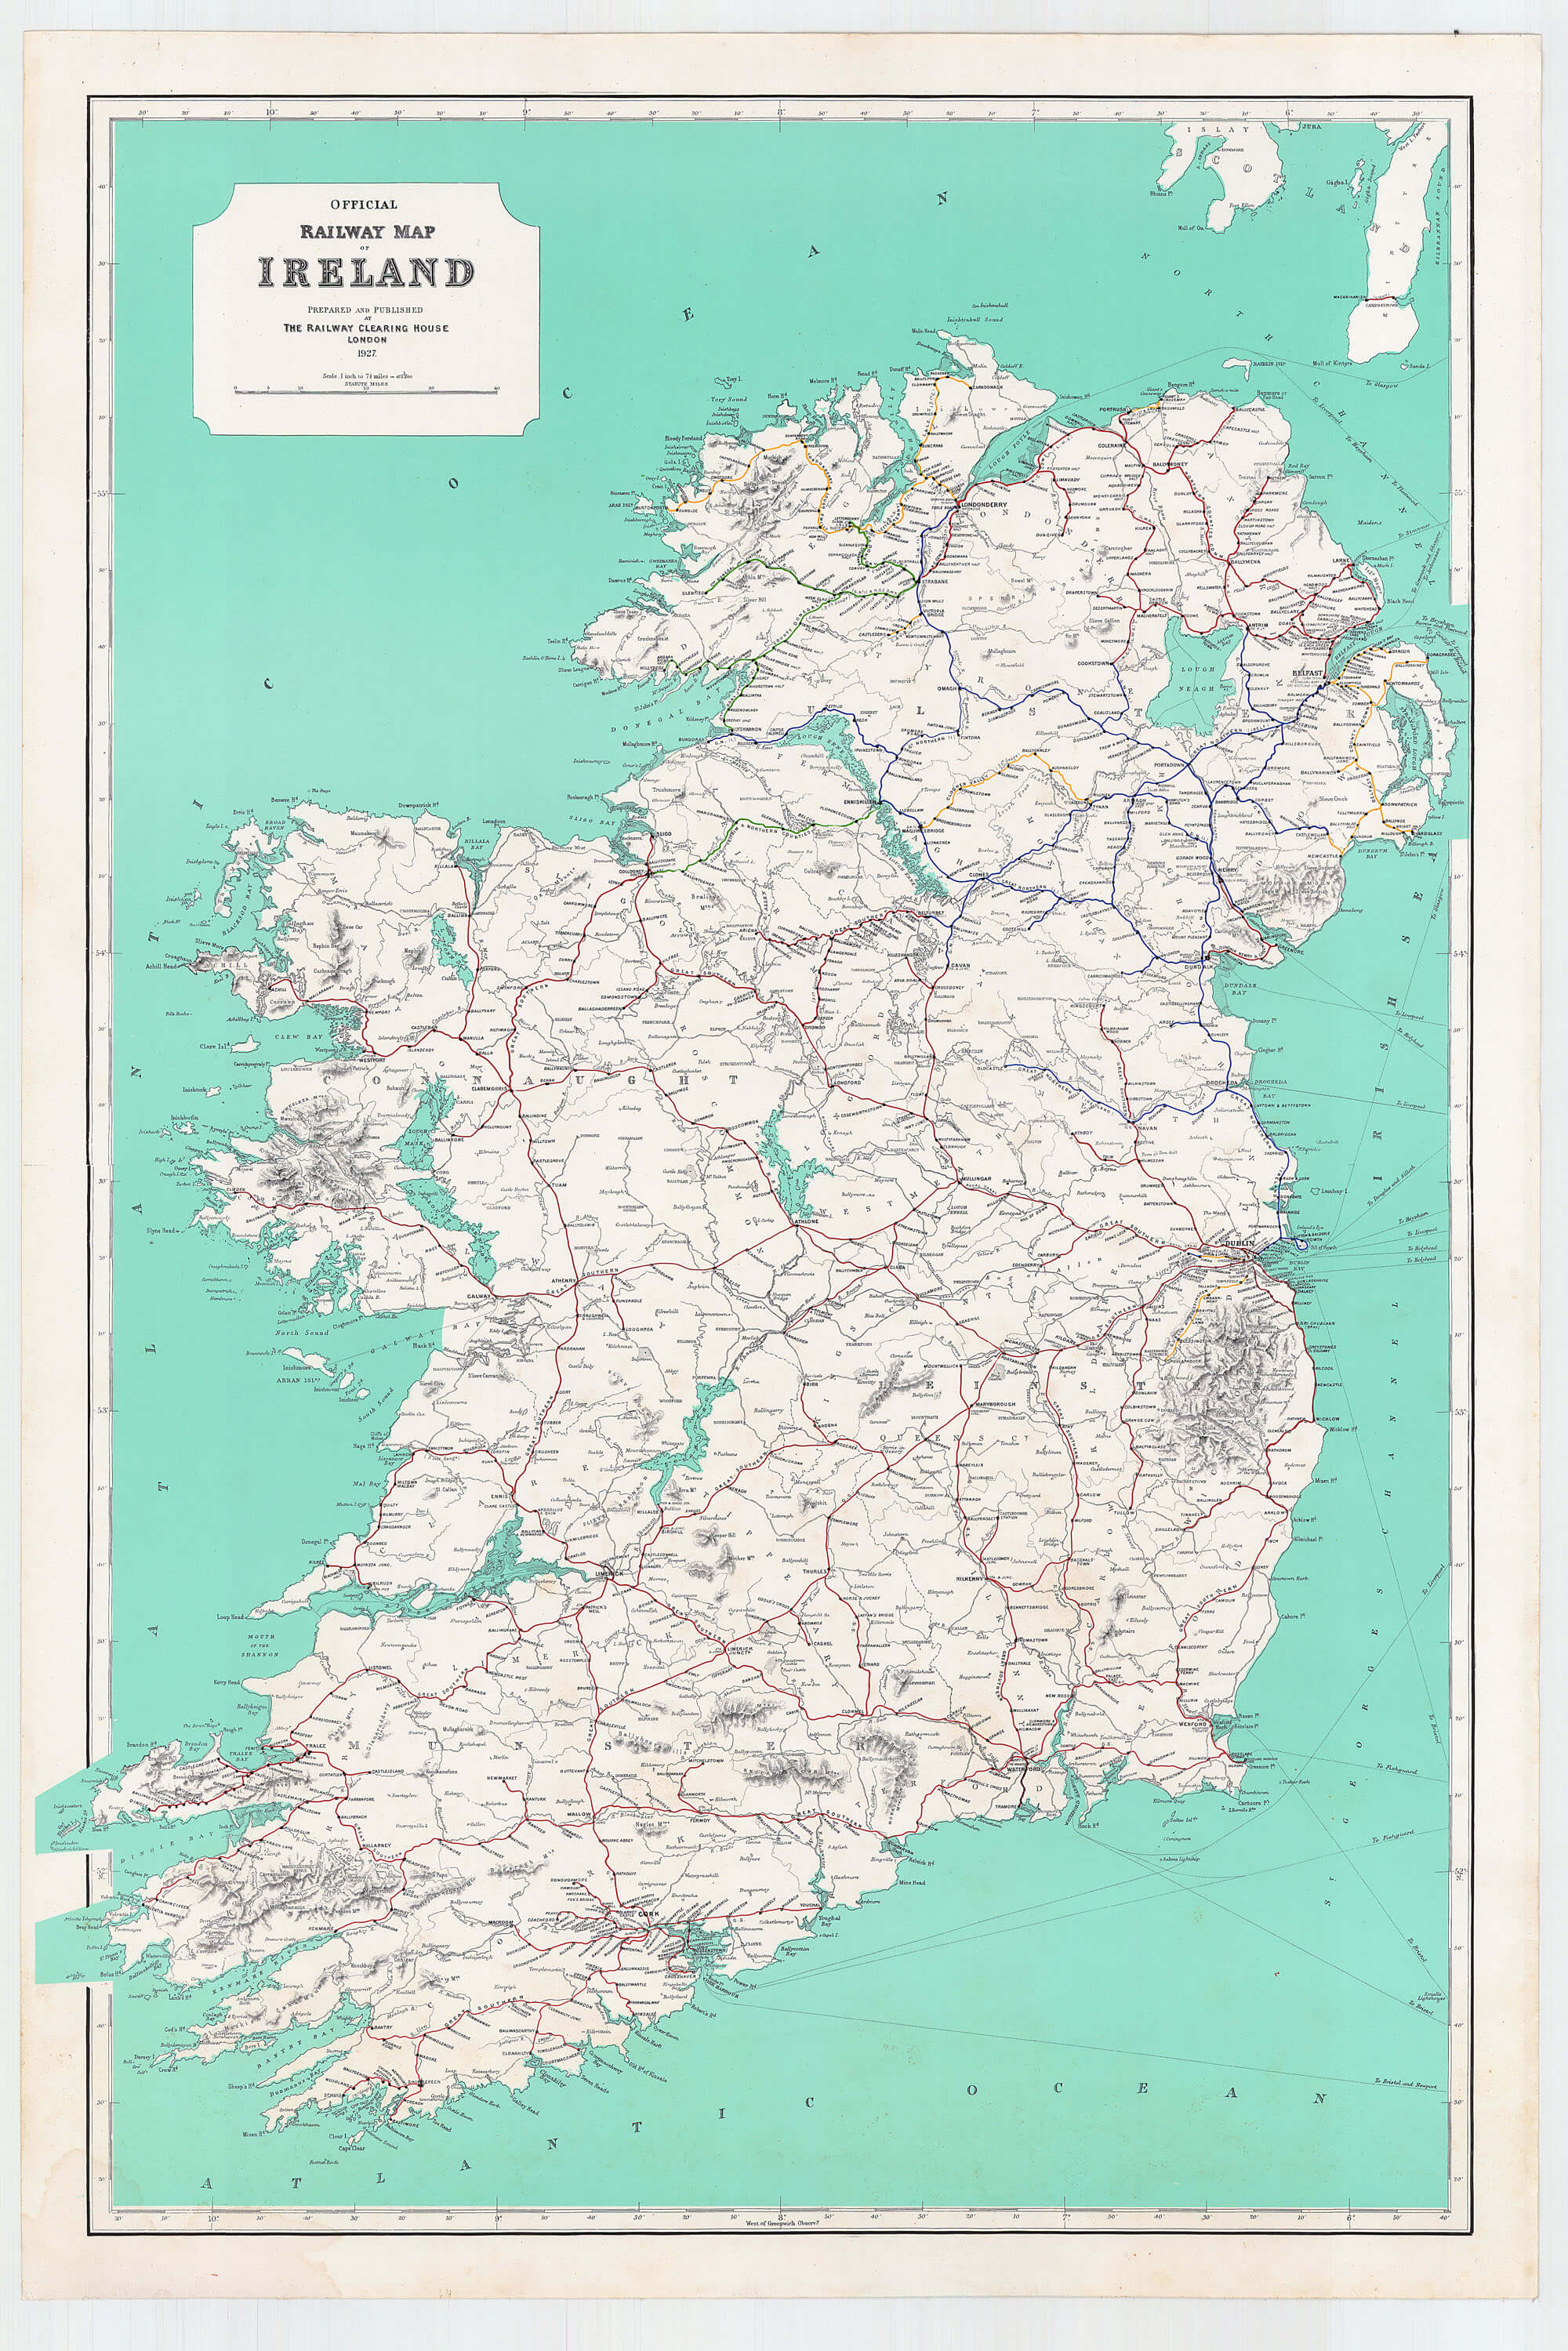 Ireland Railways 1927 